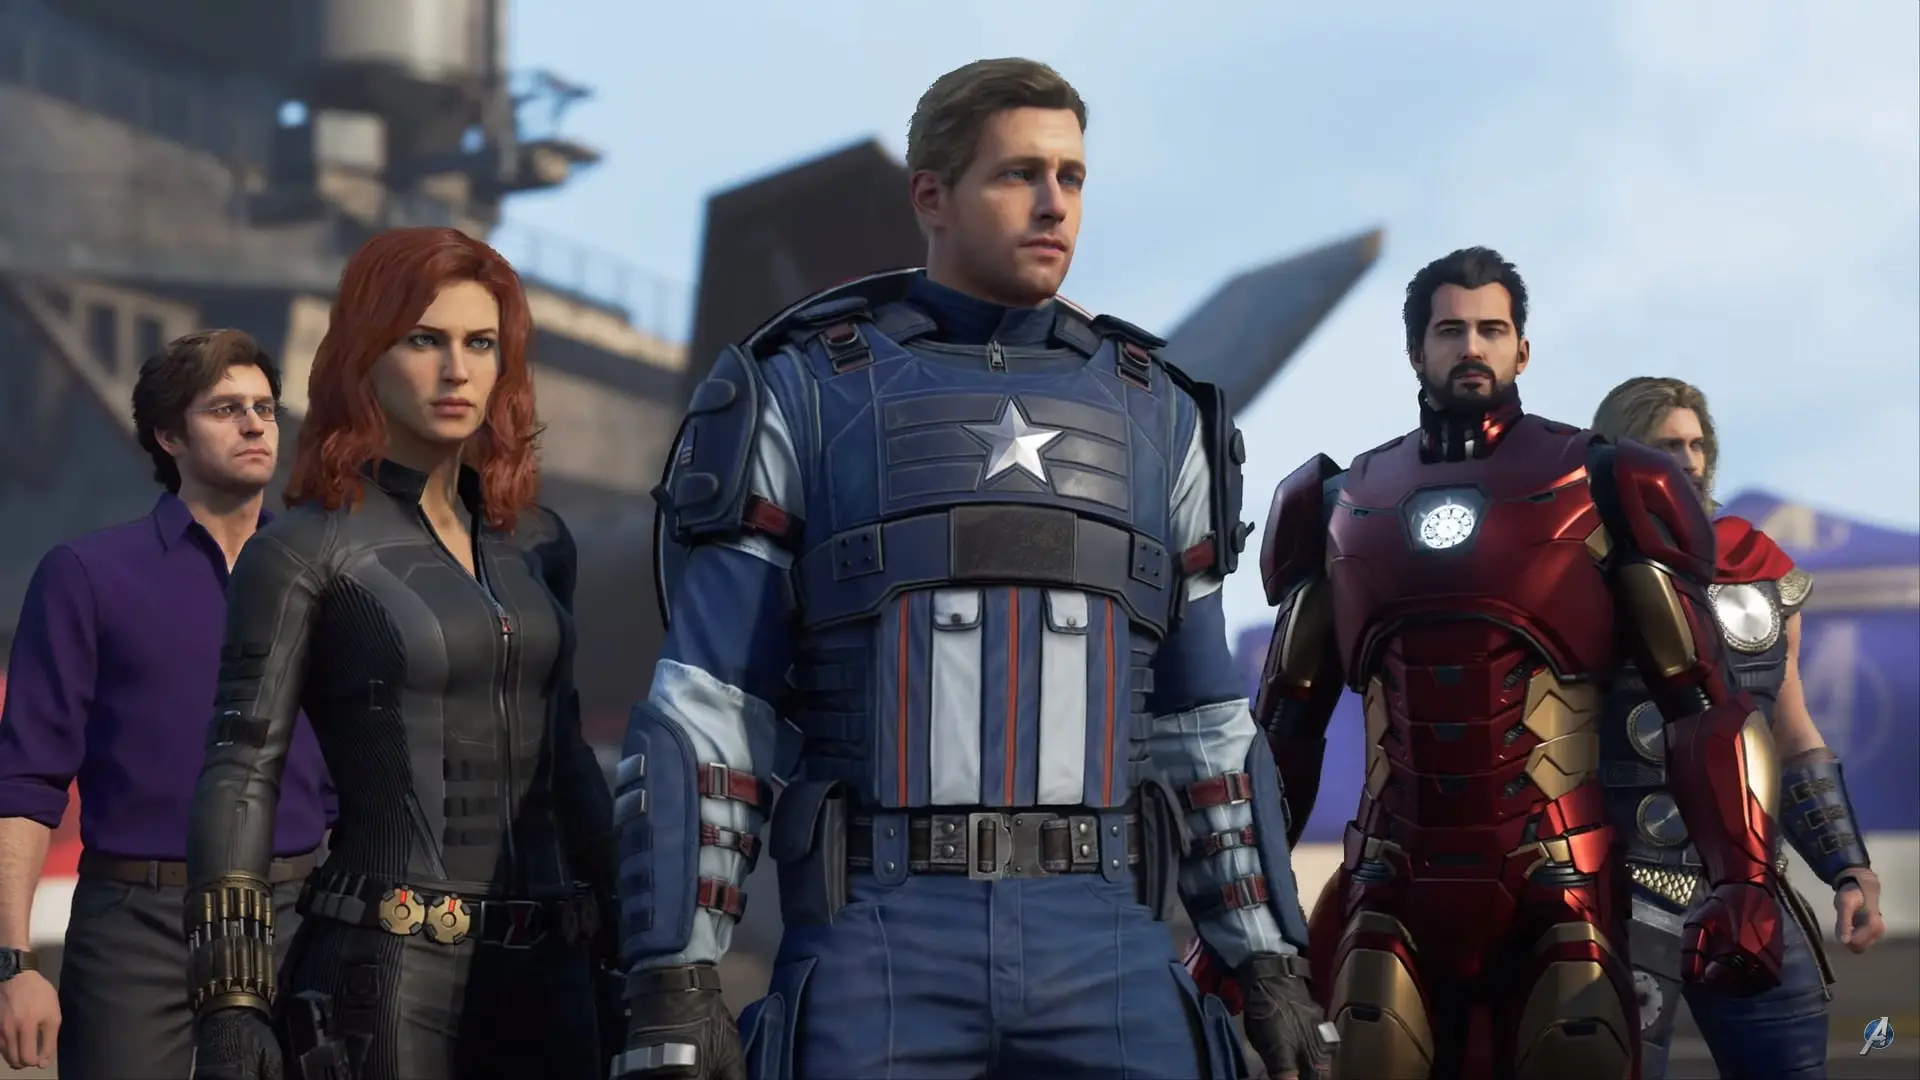 Marvel's Avengers game cast 